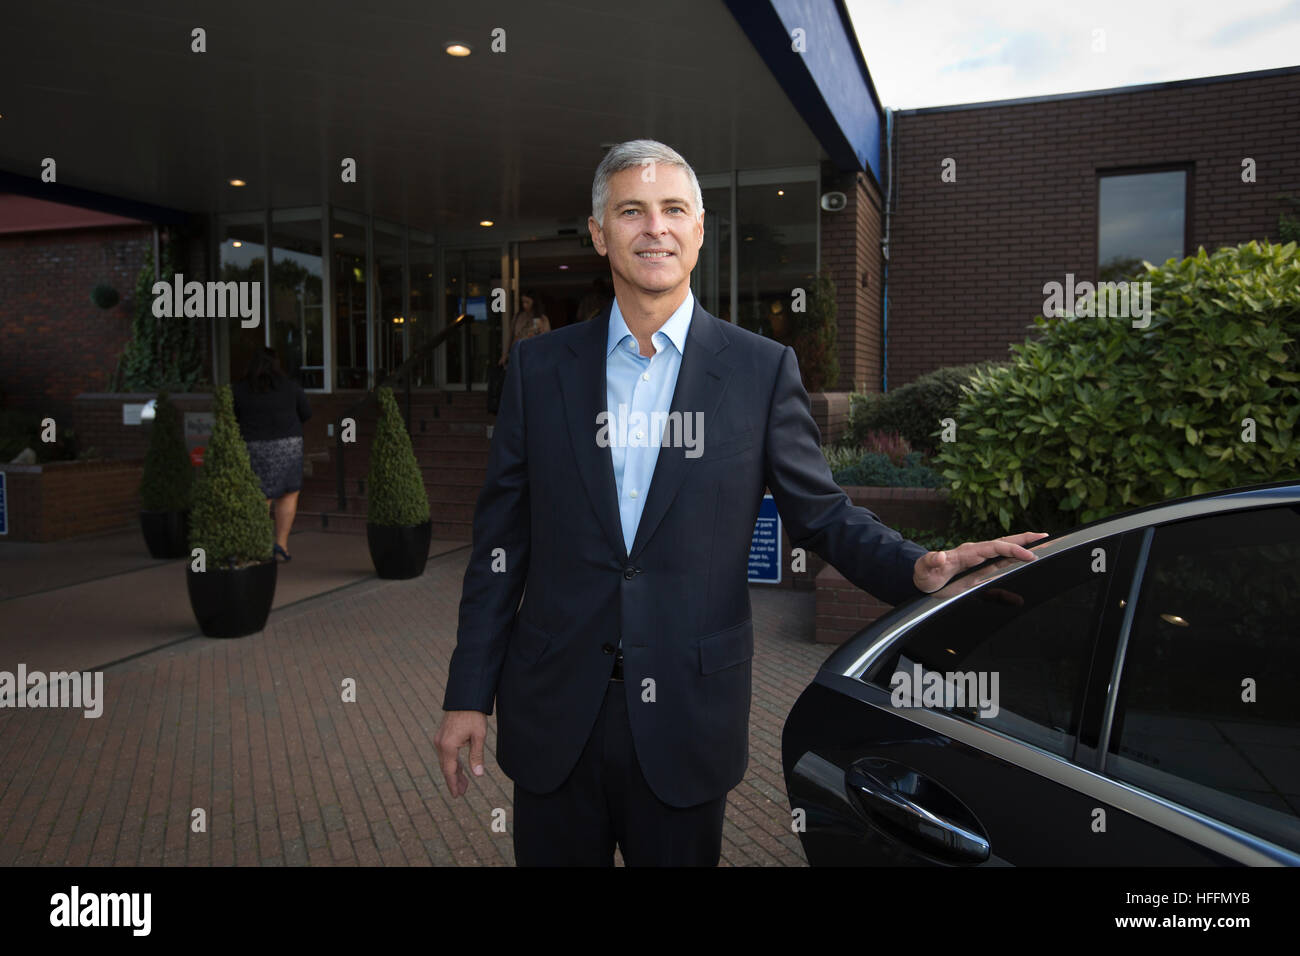 Chris Nassetta, président-directeur général de Hilton Worldwide, photographié à l'extérieur de l'hôtel Hilton Watford, lors d'une visite en Angleterre, Royaume-Uni Banque D'Images